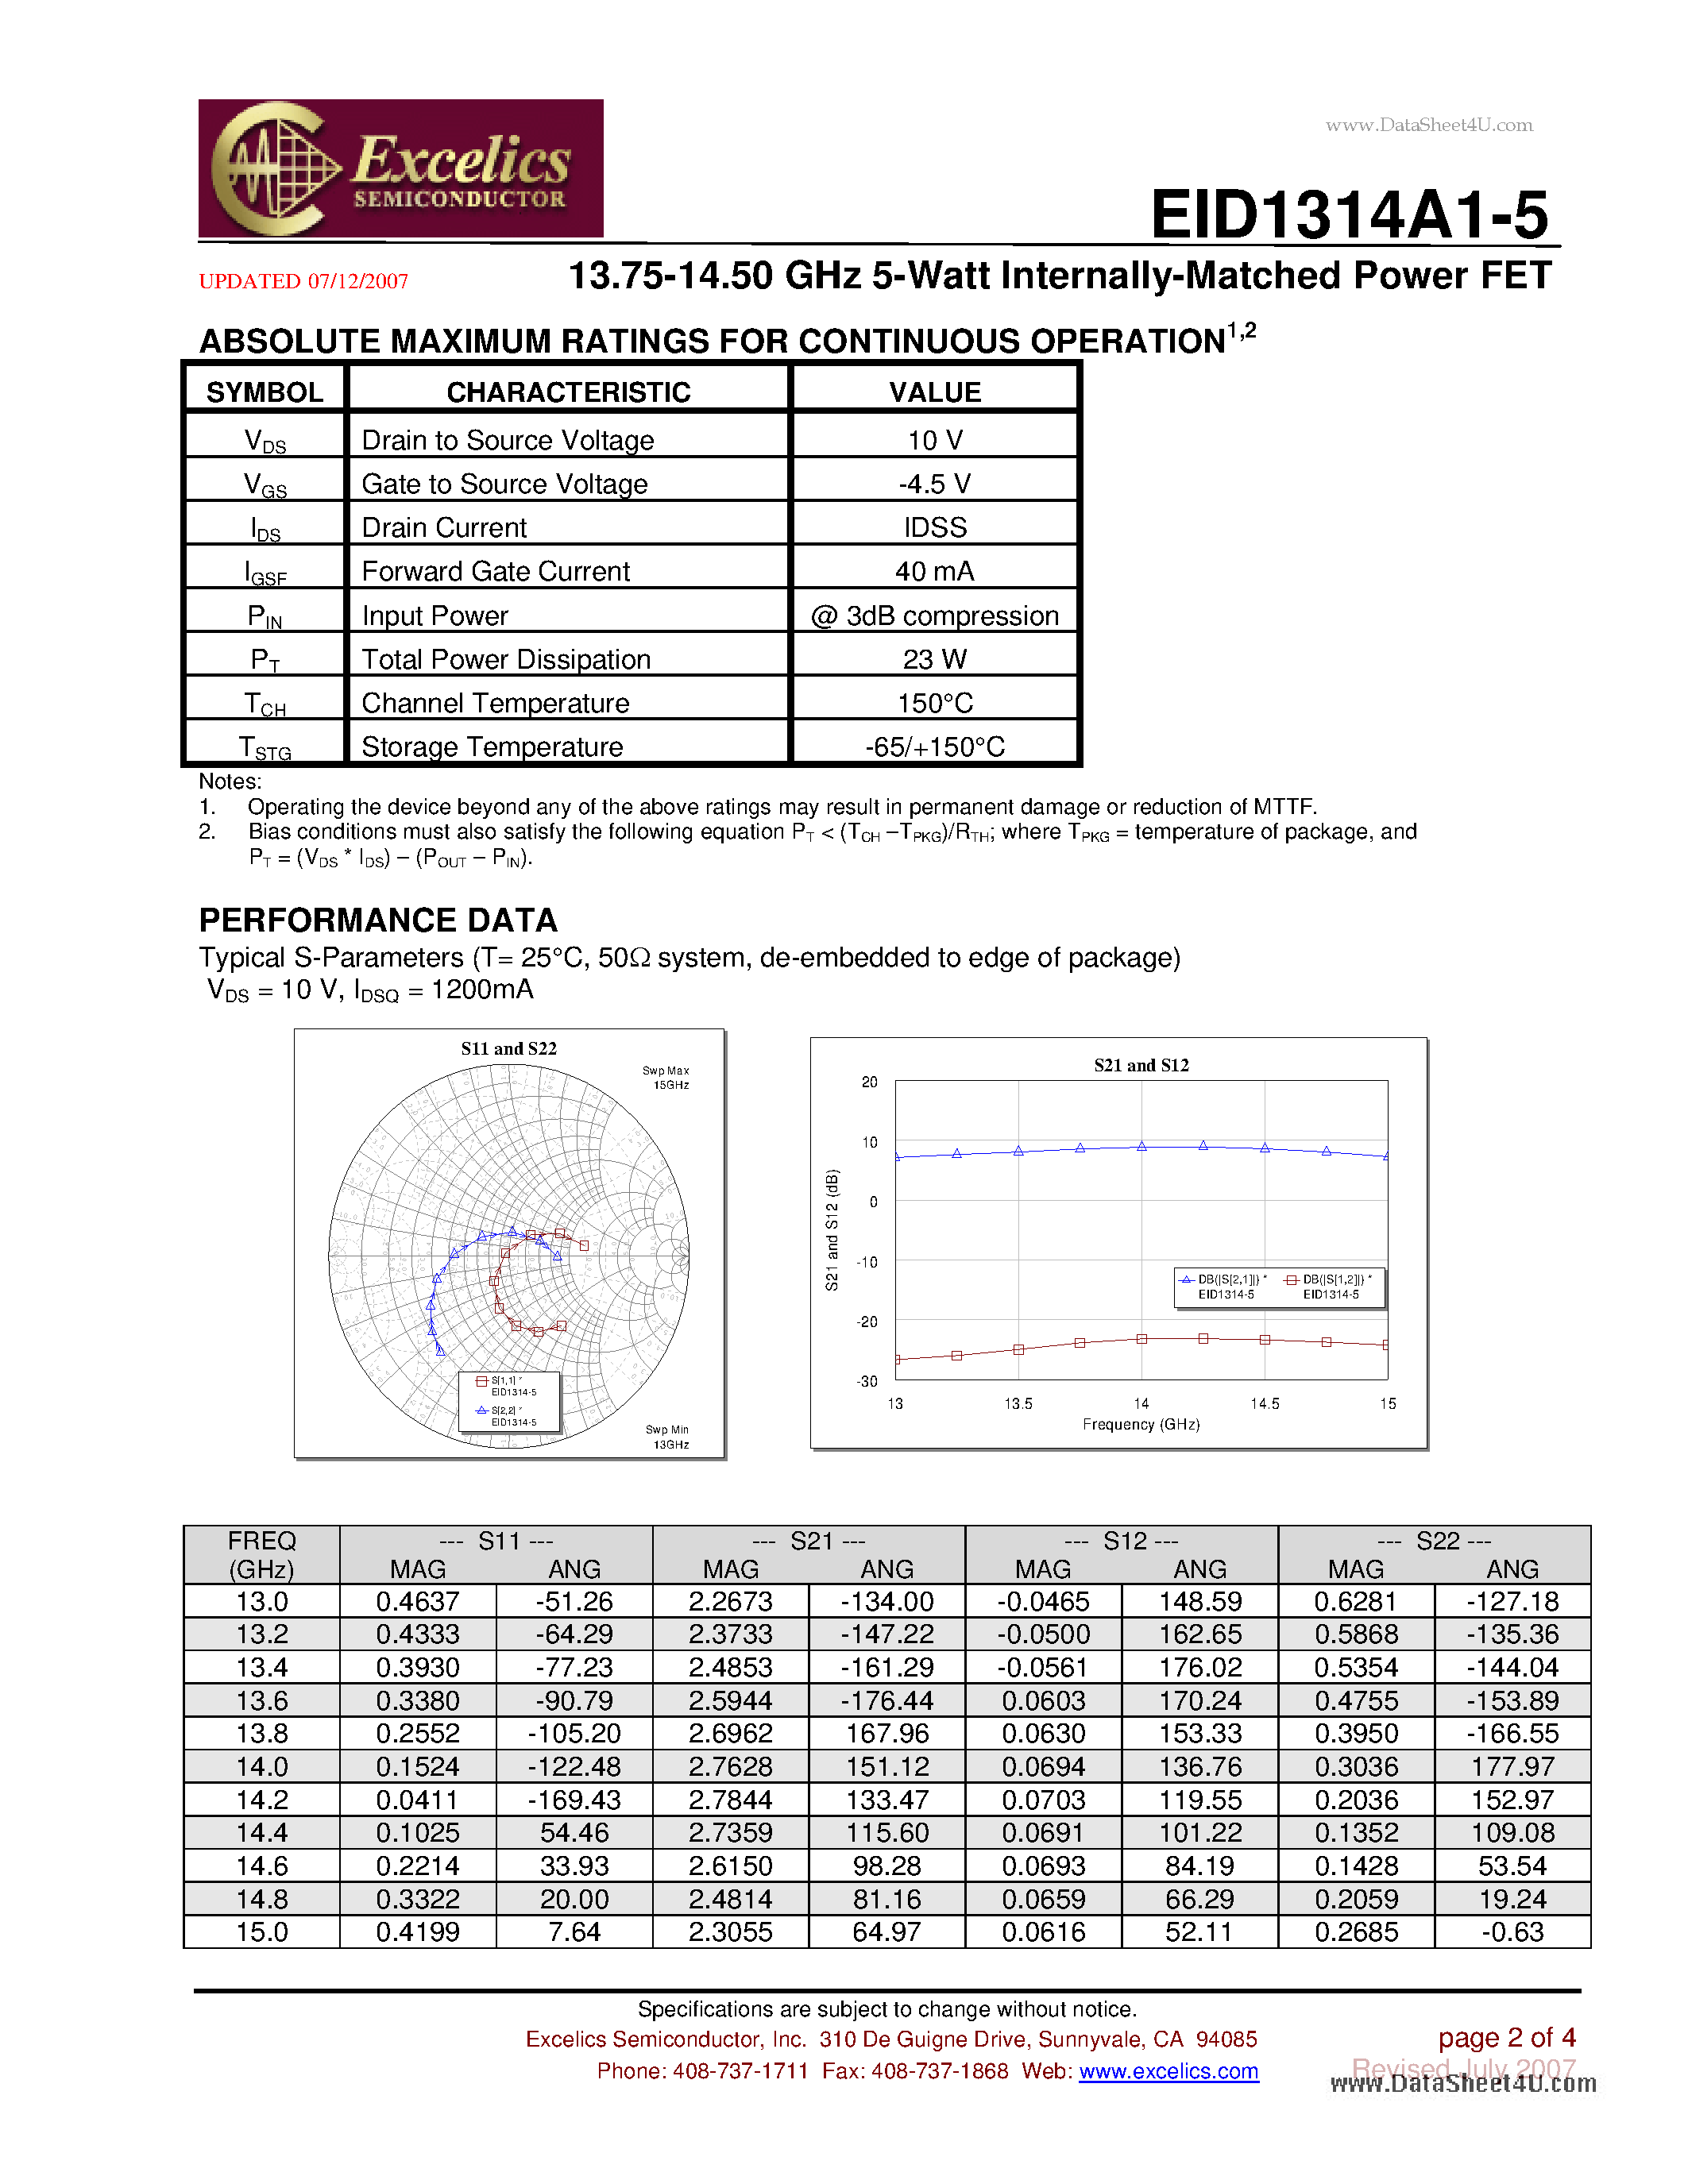 Даташит EID1314A1-5 - 13.75-14.50 GHz 5-Watt Internally-Matched Power FET страница 2